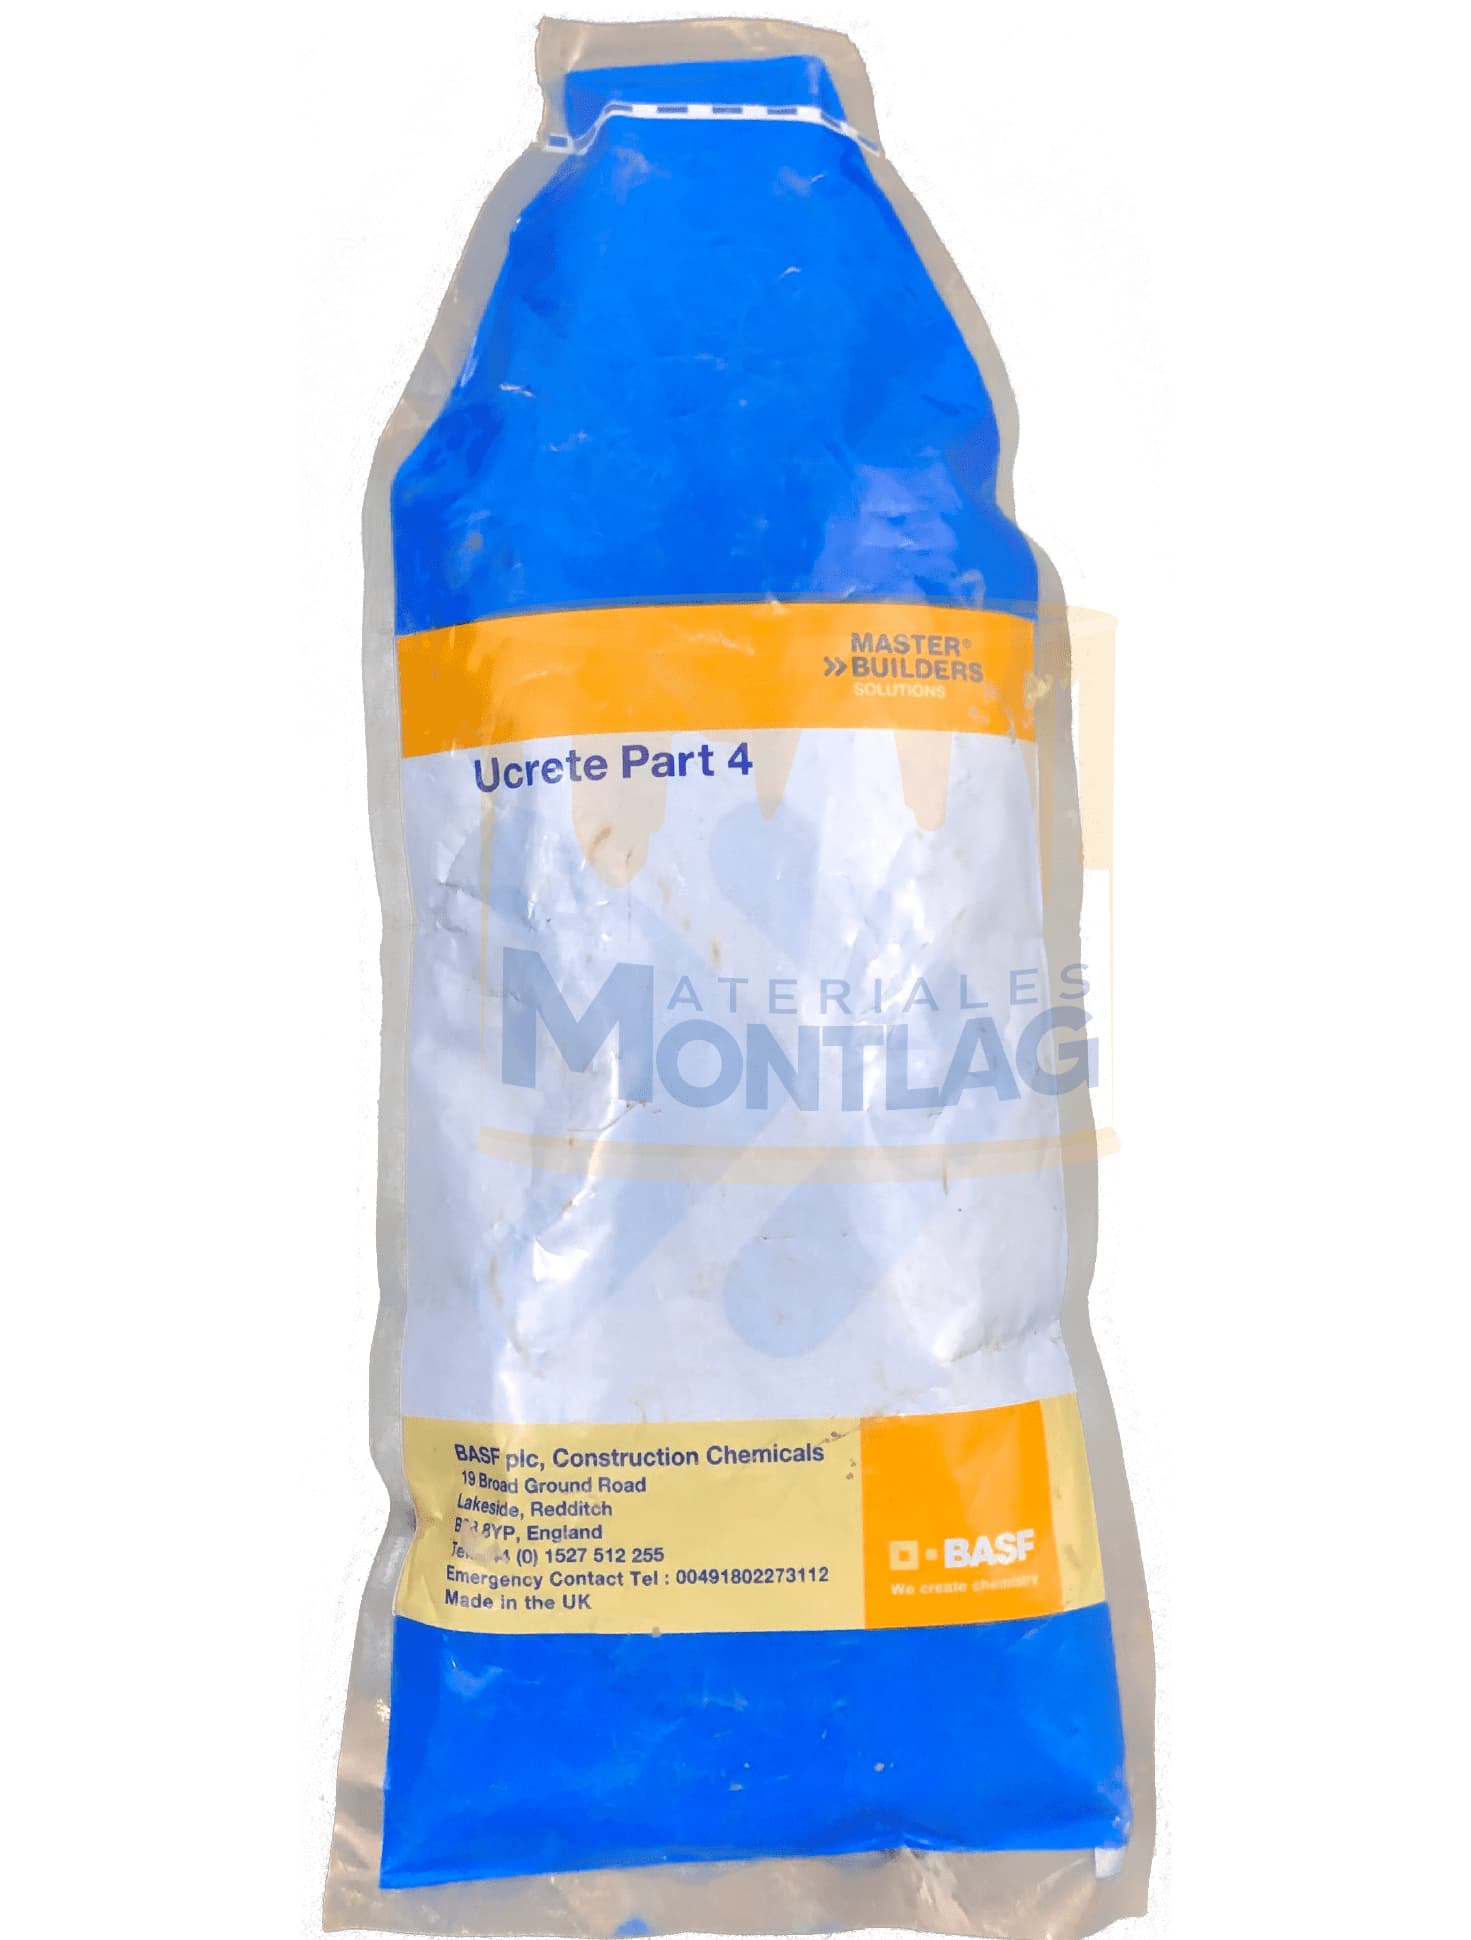 Materiales Montlag - Ucrete PT4 Azul